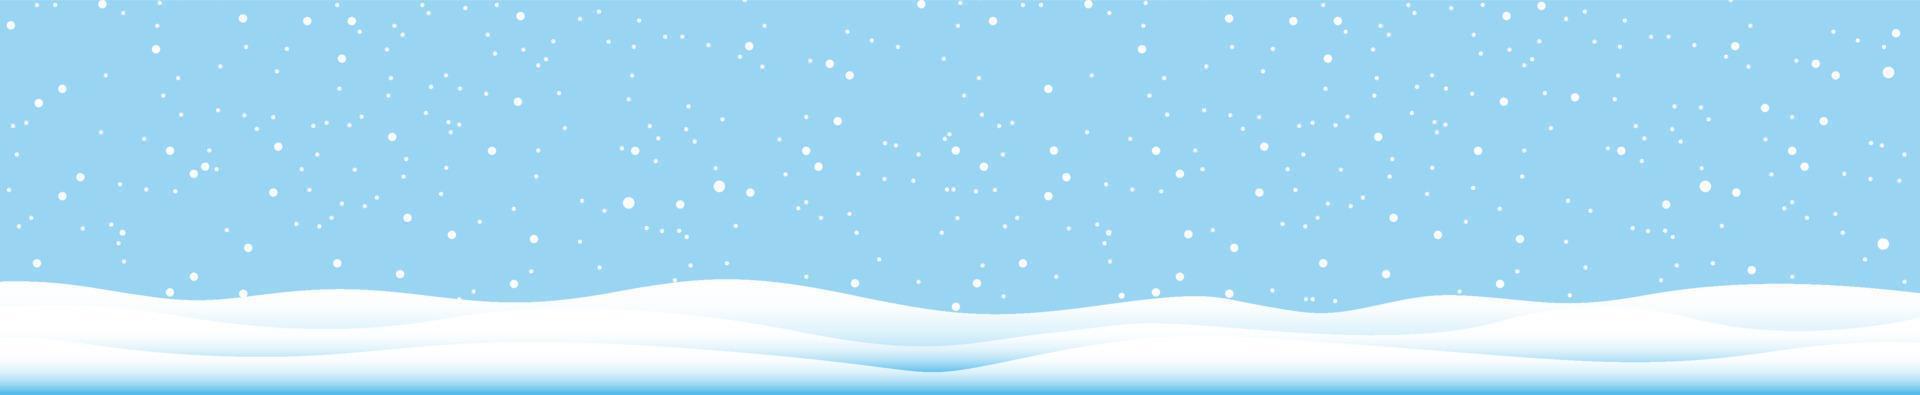 copos de nieve y fondo de invierno, paisaje de invierno, banner horizontal, ilustración vectorial. vector